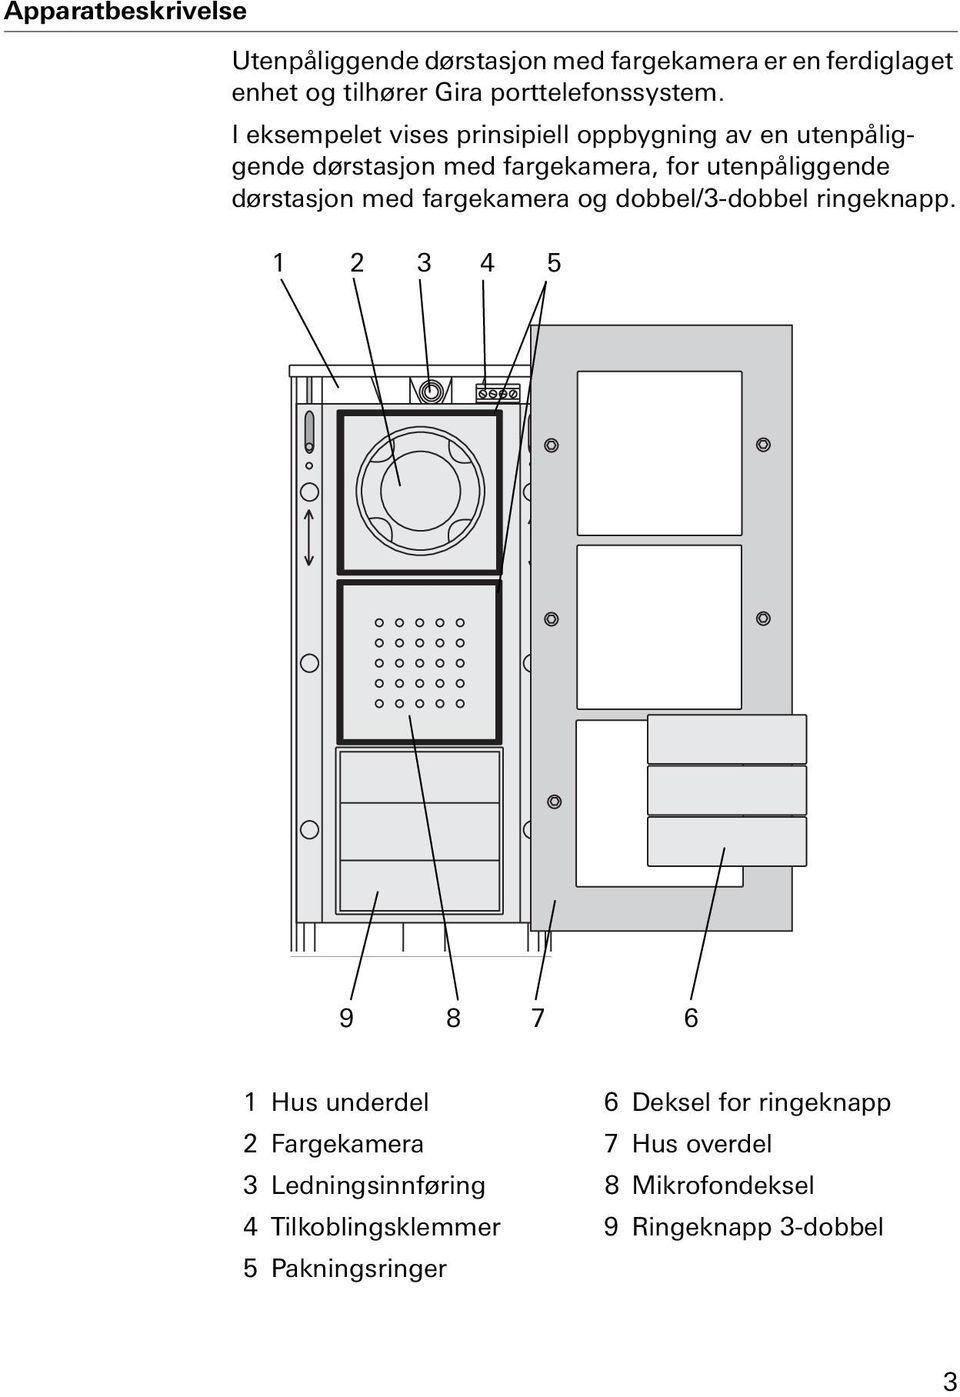 I eksempelet vises prinsipiell oppbygning av en utenpåliggende dørstasjon med fargekamera, for utenpåliggende